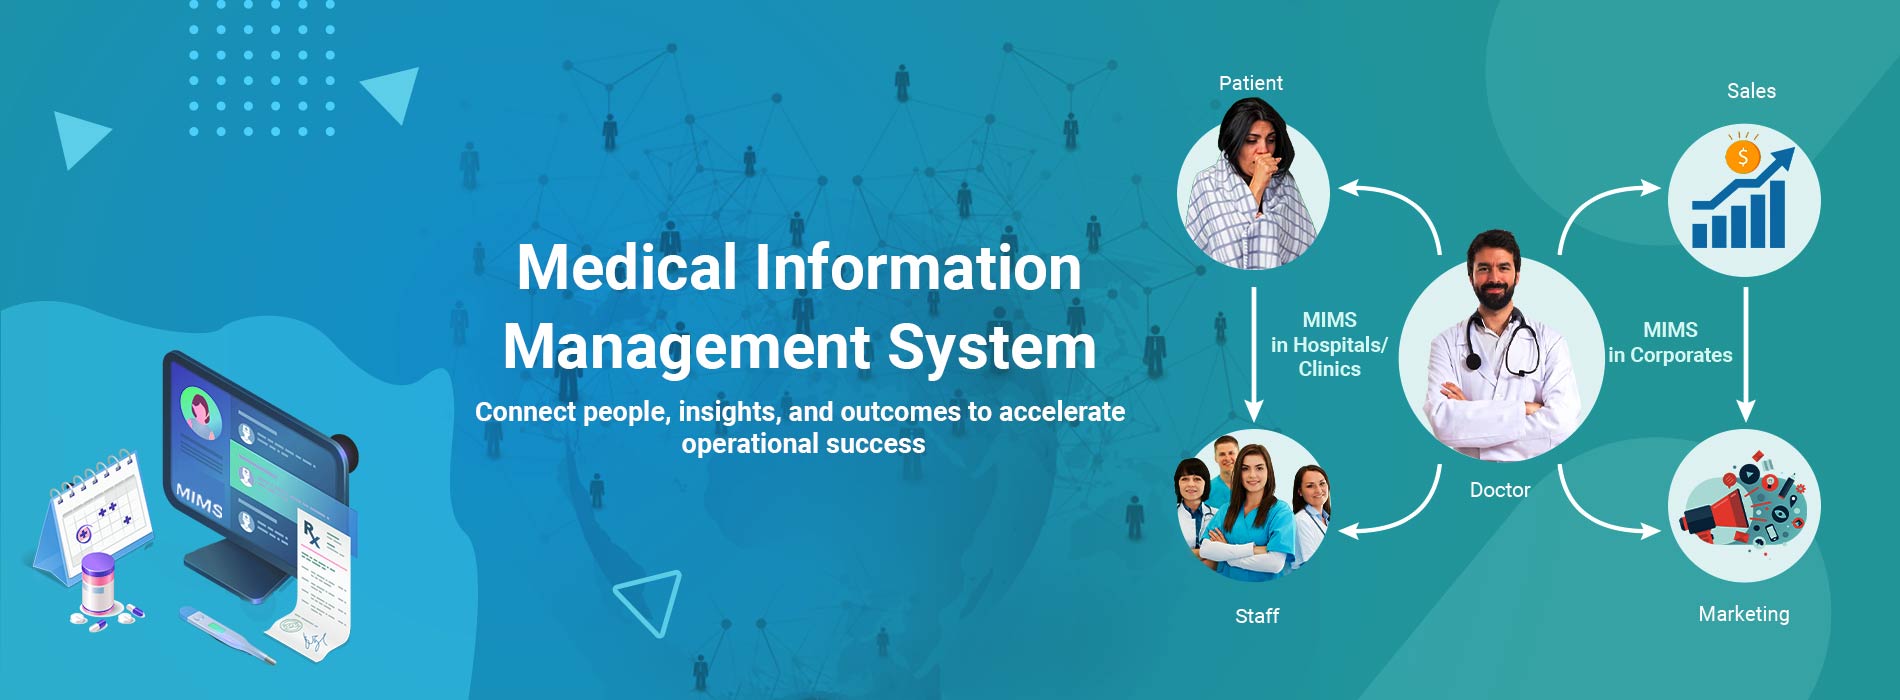 Medical-Information-Management-System